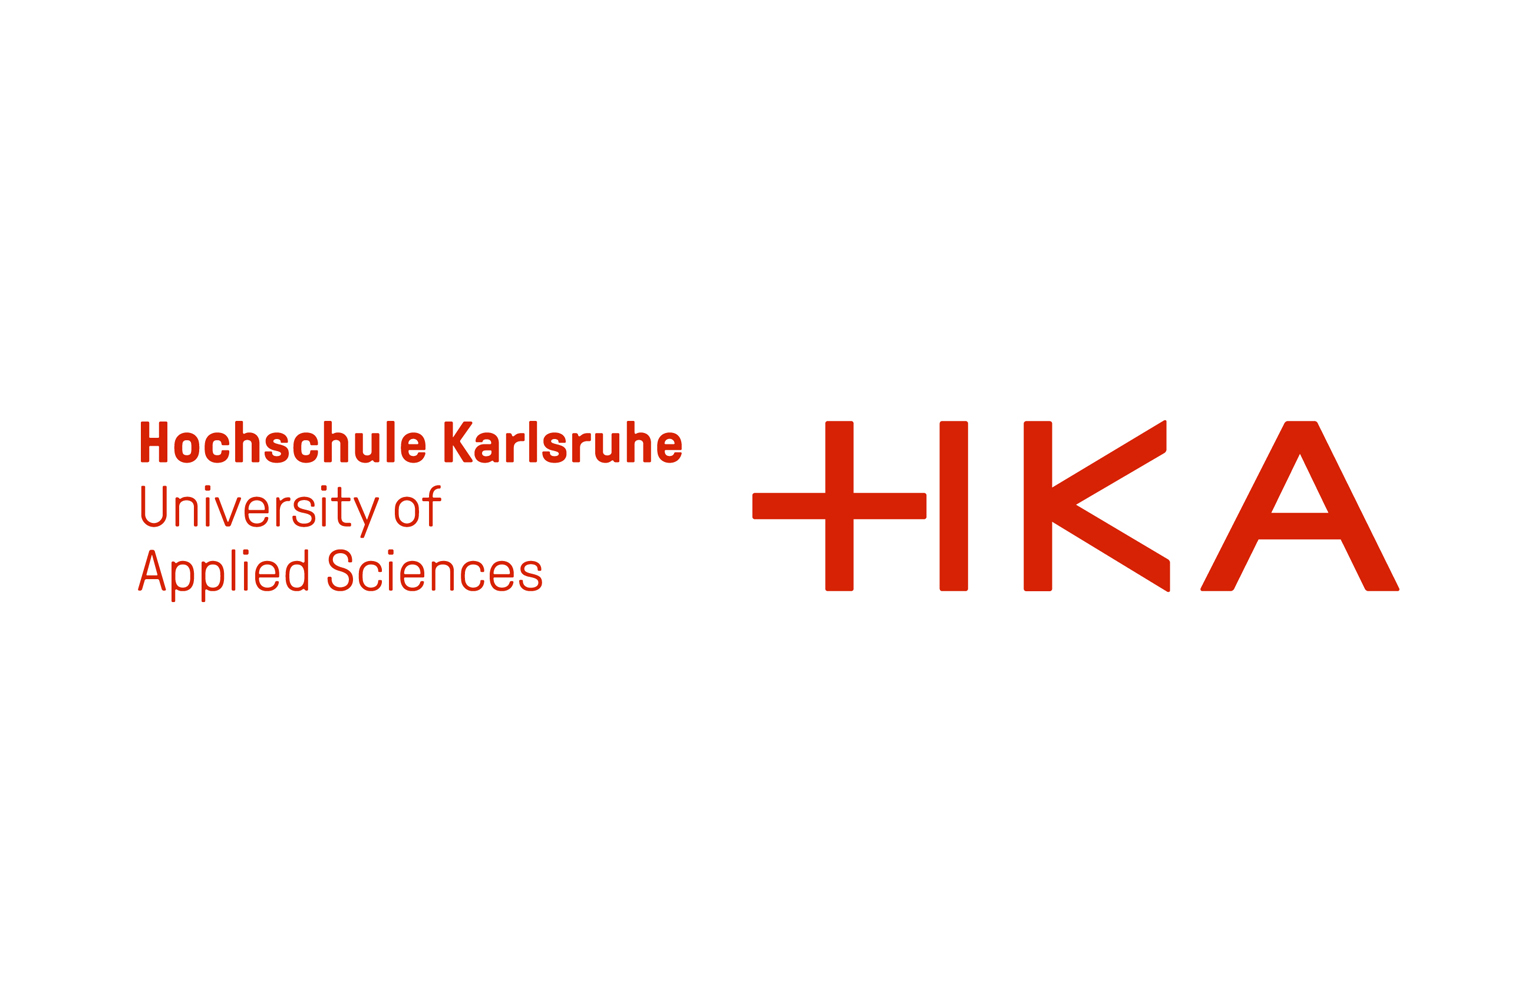 Hochschule Karlsruhe logo